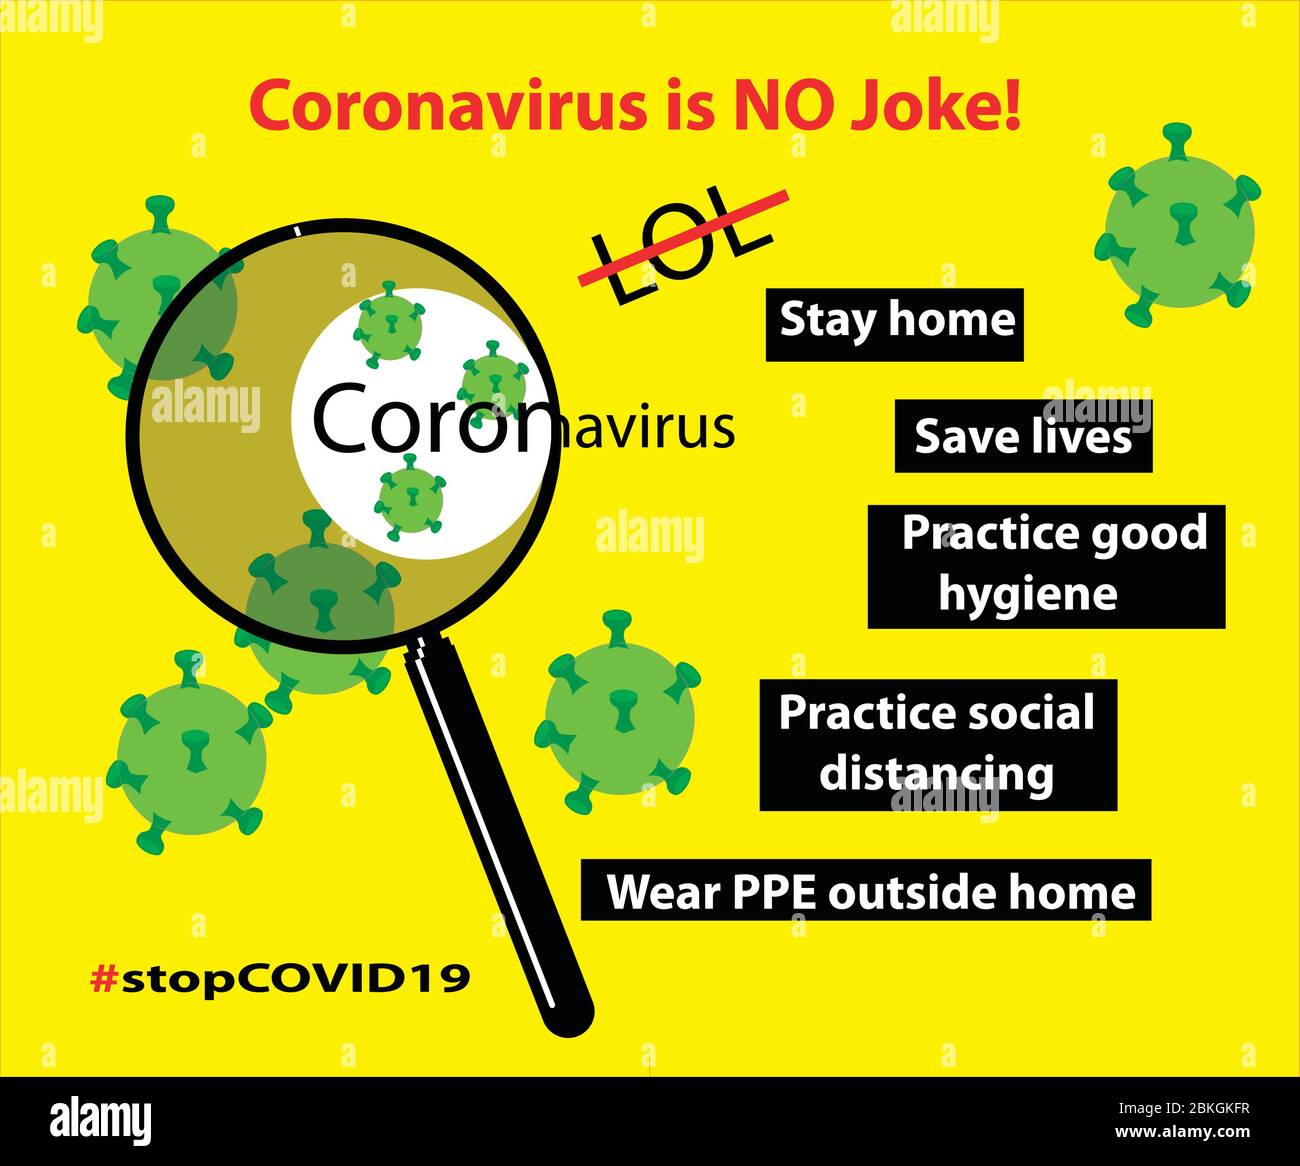 corona virus info-graphique affiche avec des mesures préventives, des conseils de prévention pour arrêter la propagation du virus mortel et mettre l'accent sur la couronne n'est pas une plaisanterie Illustration de Vecteur